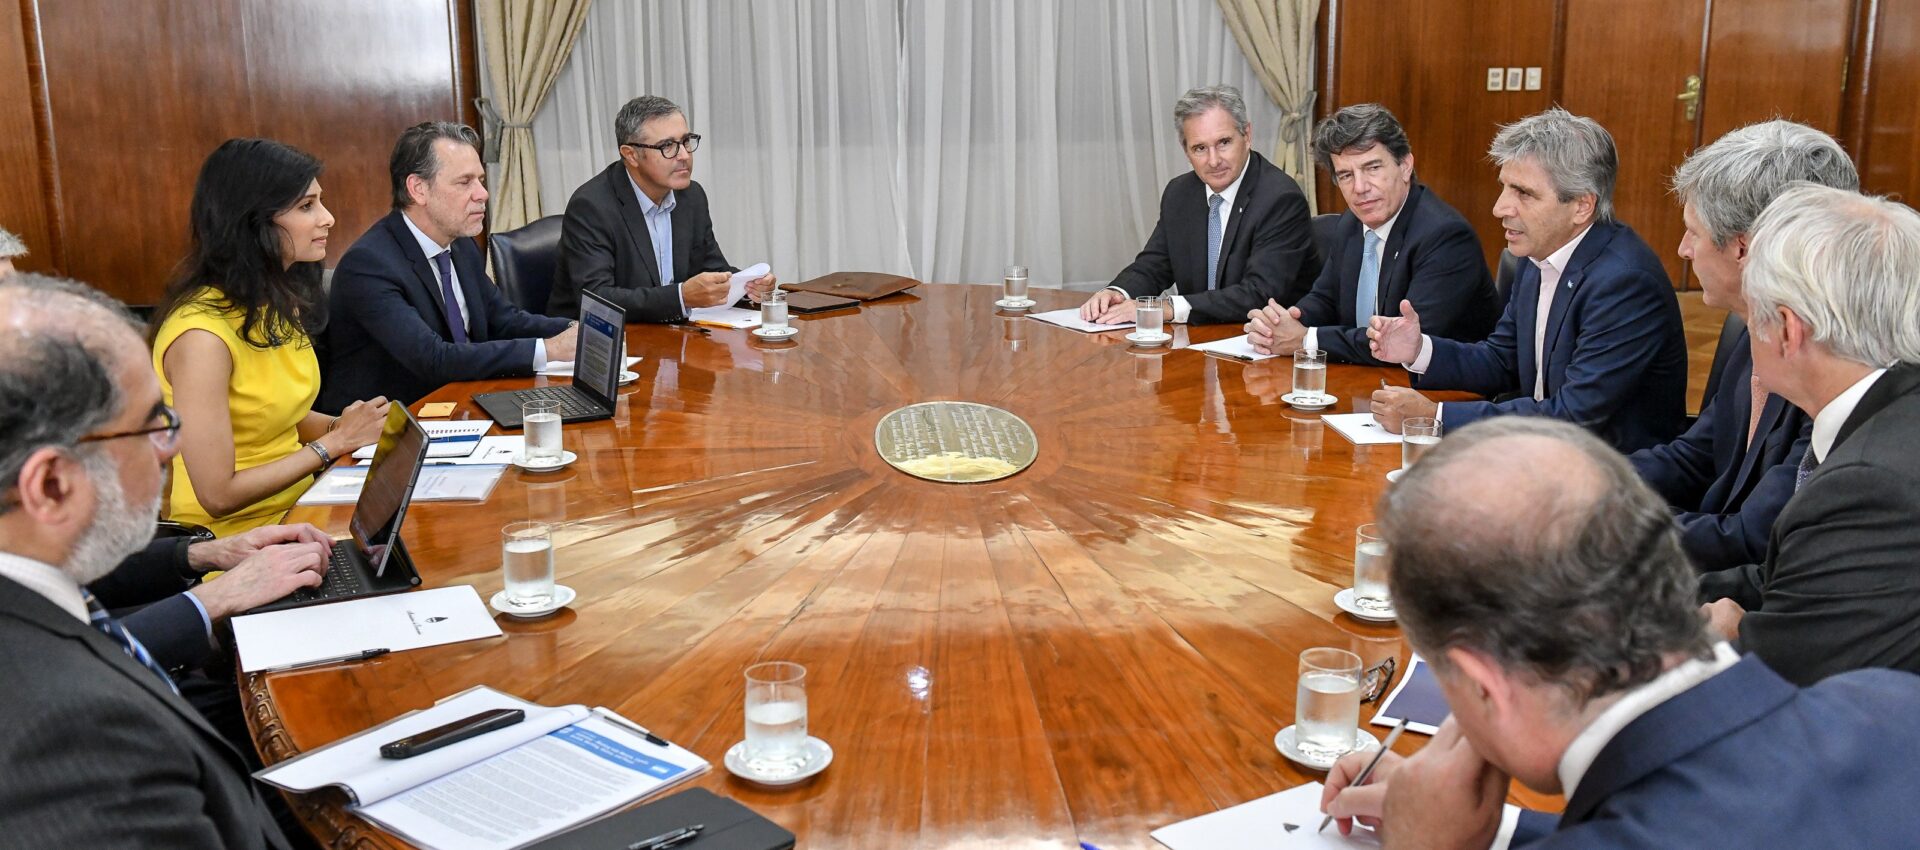 Luis Caputo reunido con funcionarios del FMI